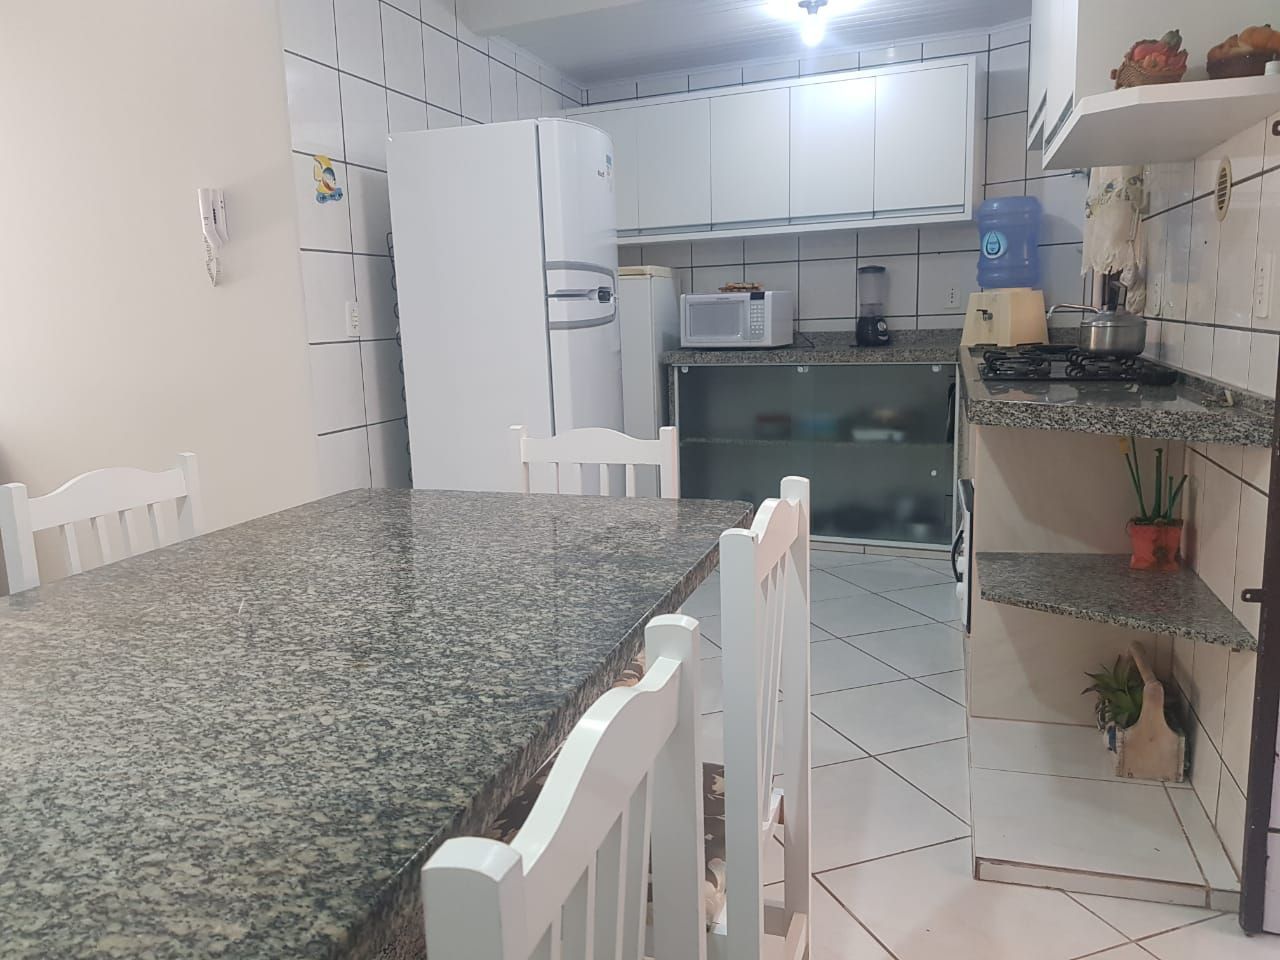 Sobrado com 3 Dormitórios para alugar, 99 m² por R$ 280,00